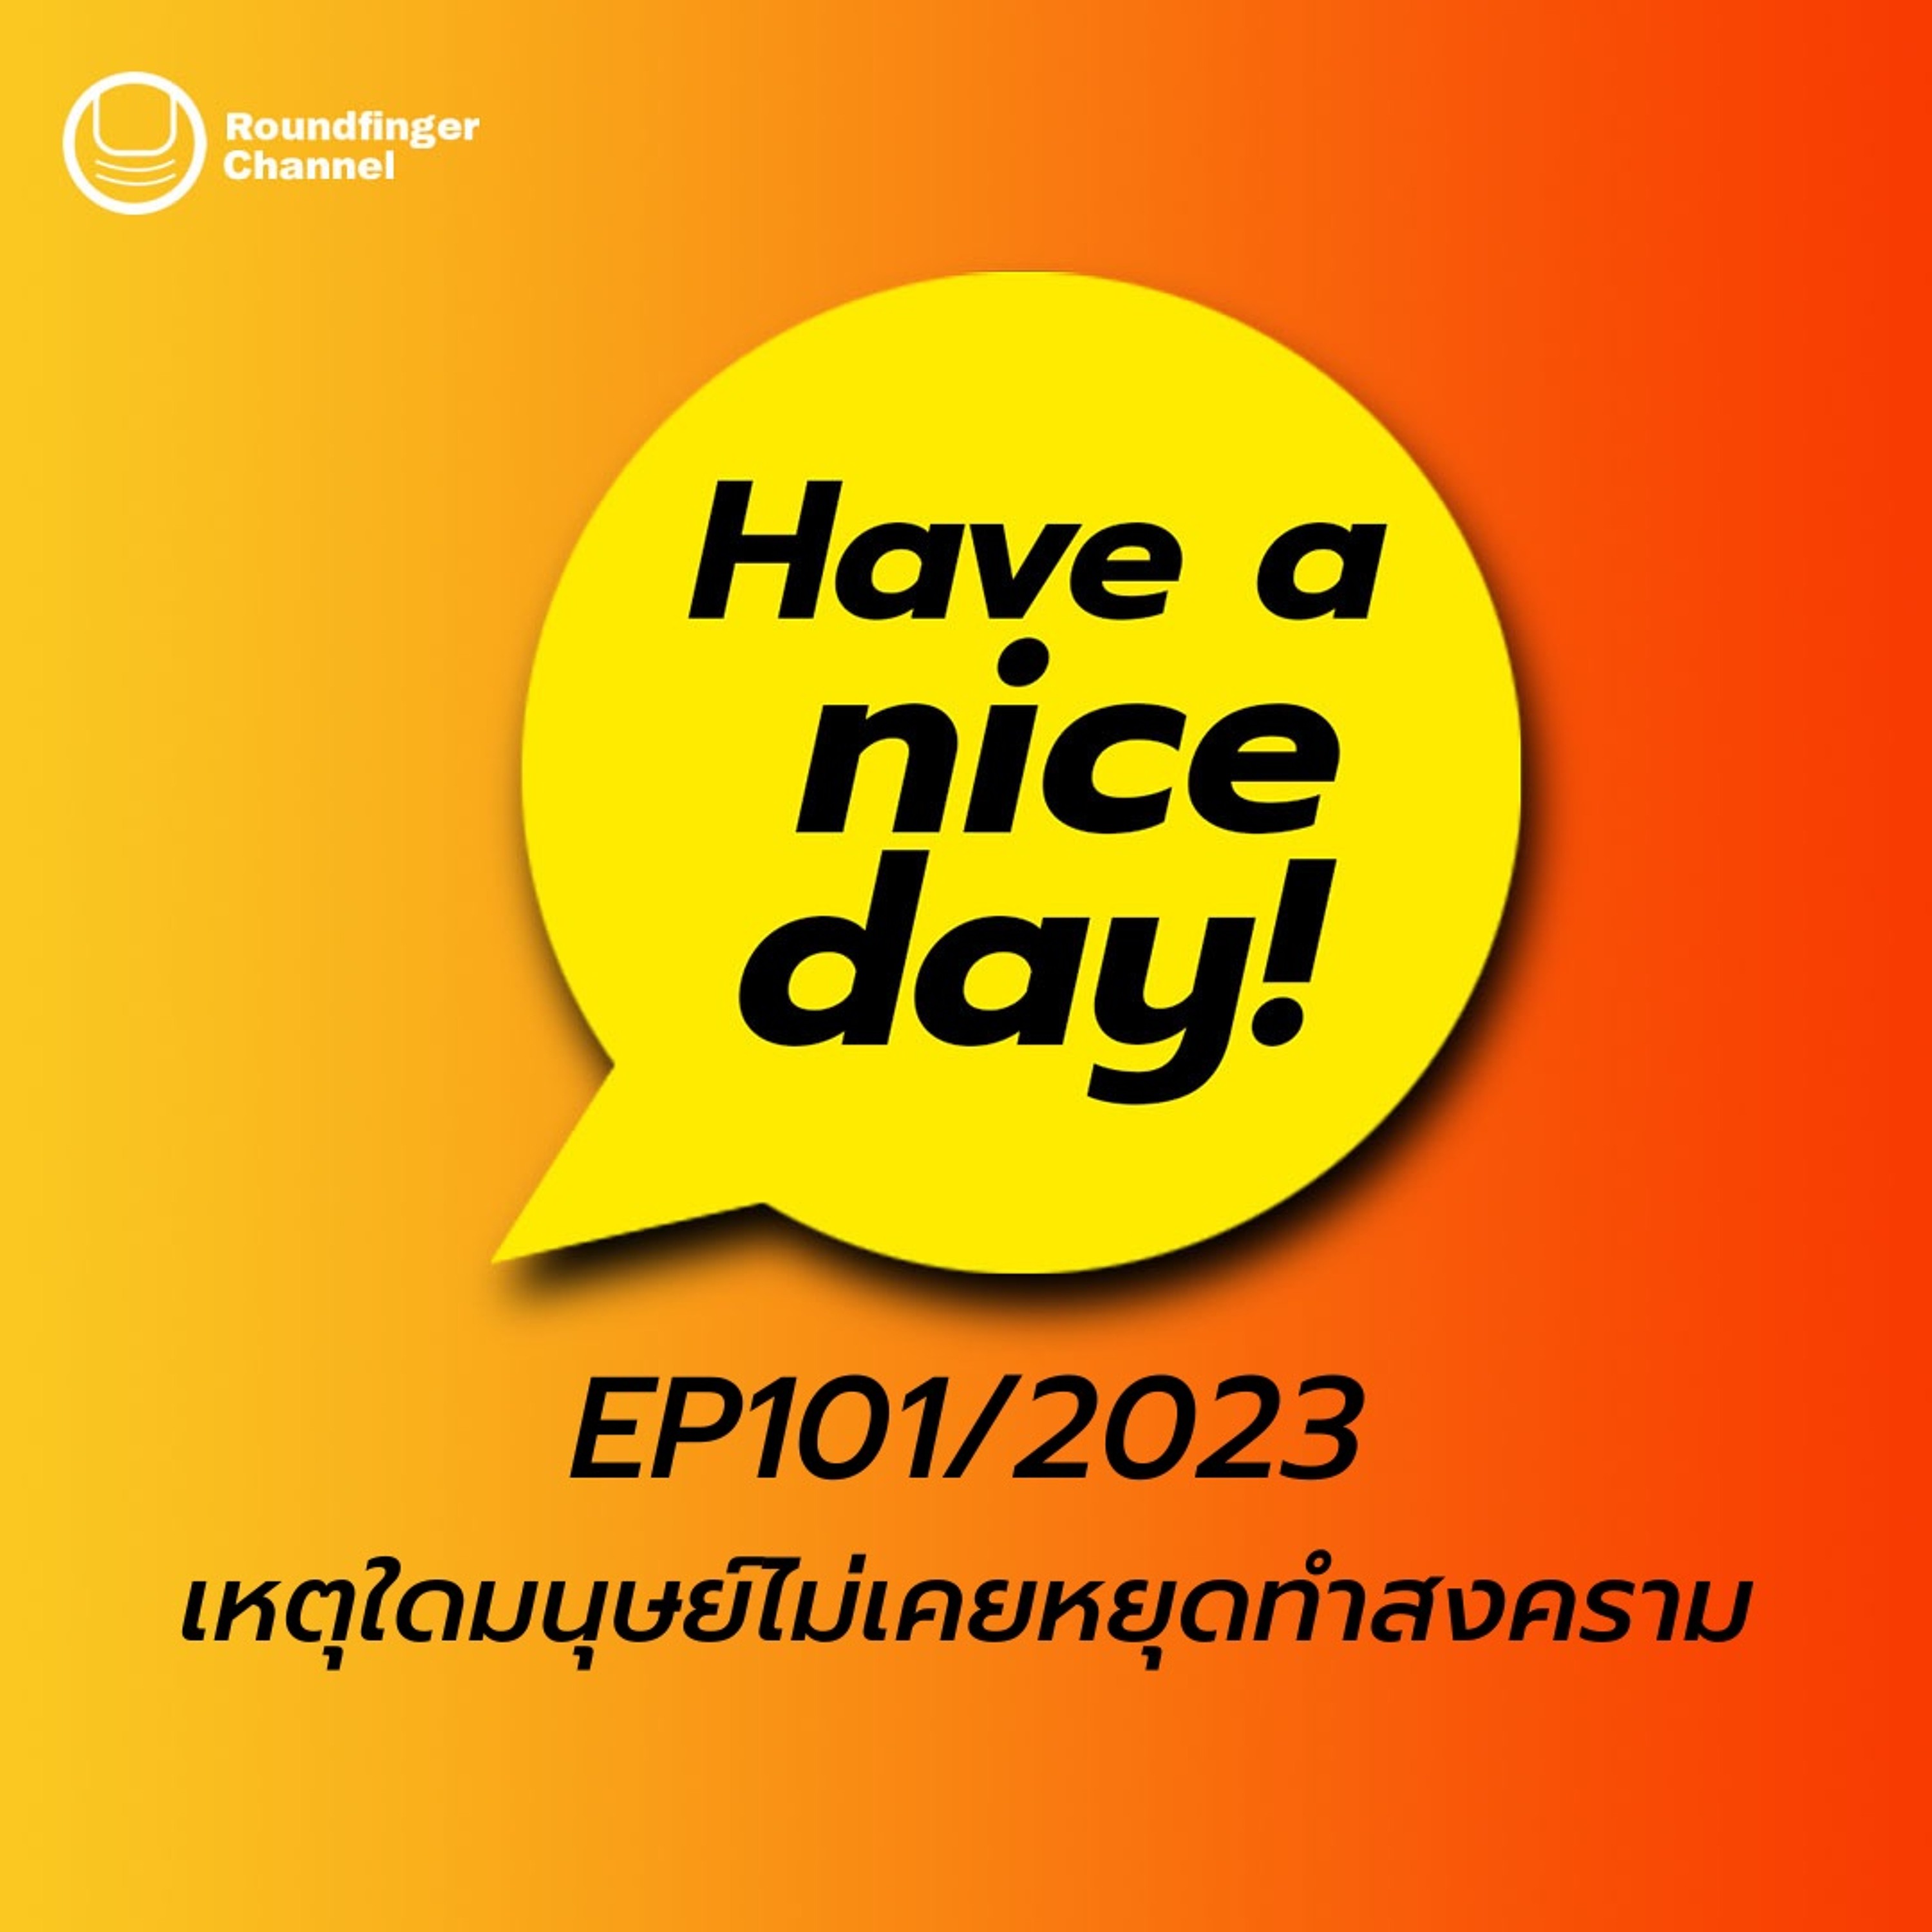 เหตุใดมนุษย์ไม่เคยหยุดทำสงคราม | Have A Nice Day! EP101/2023